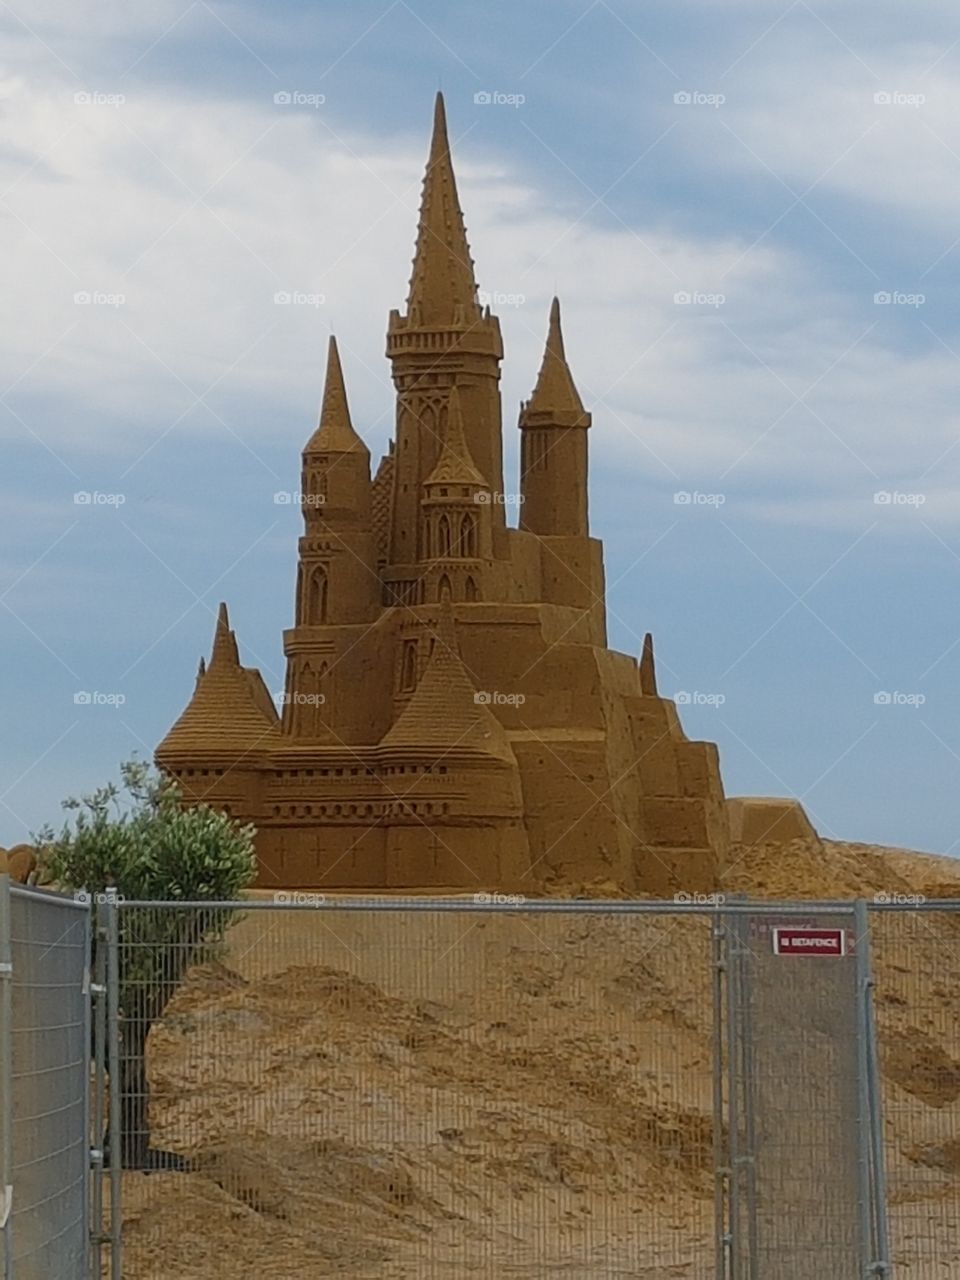 Sand Castle in Belgium